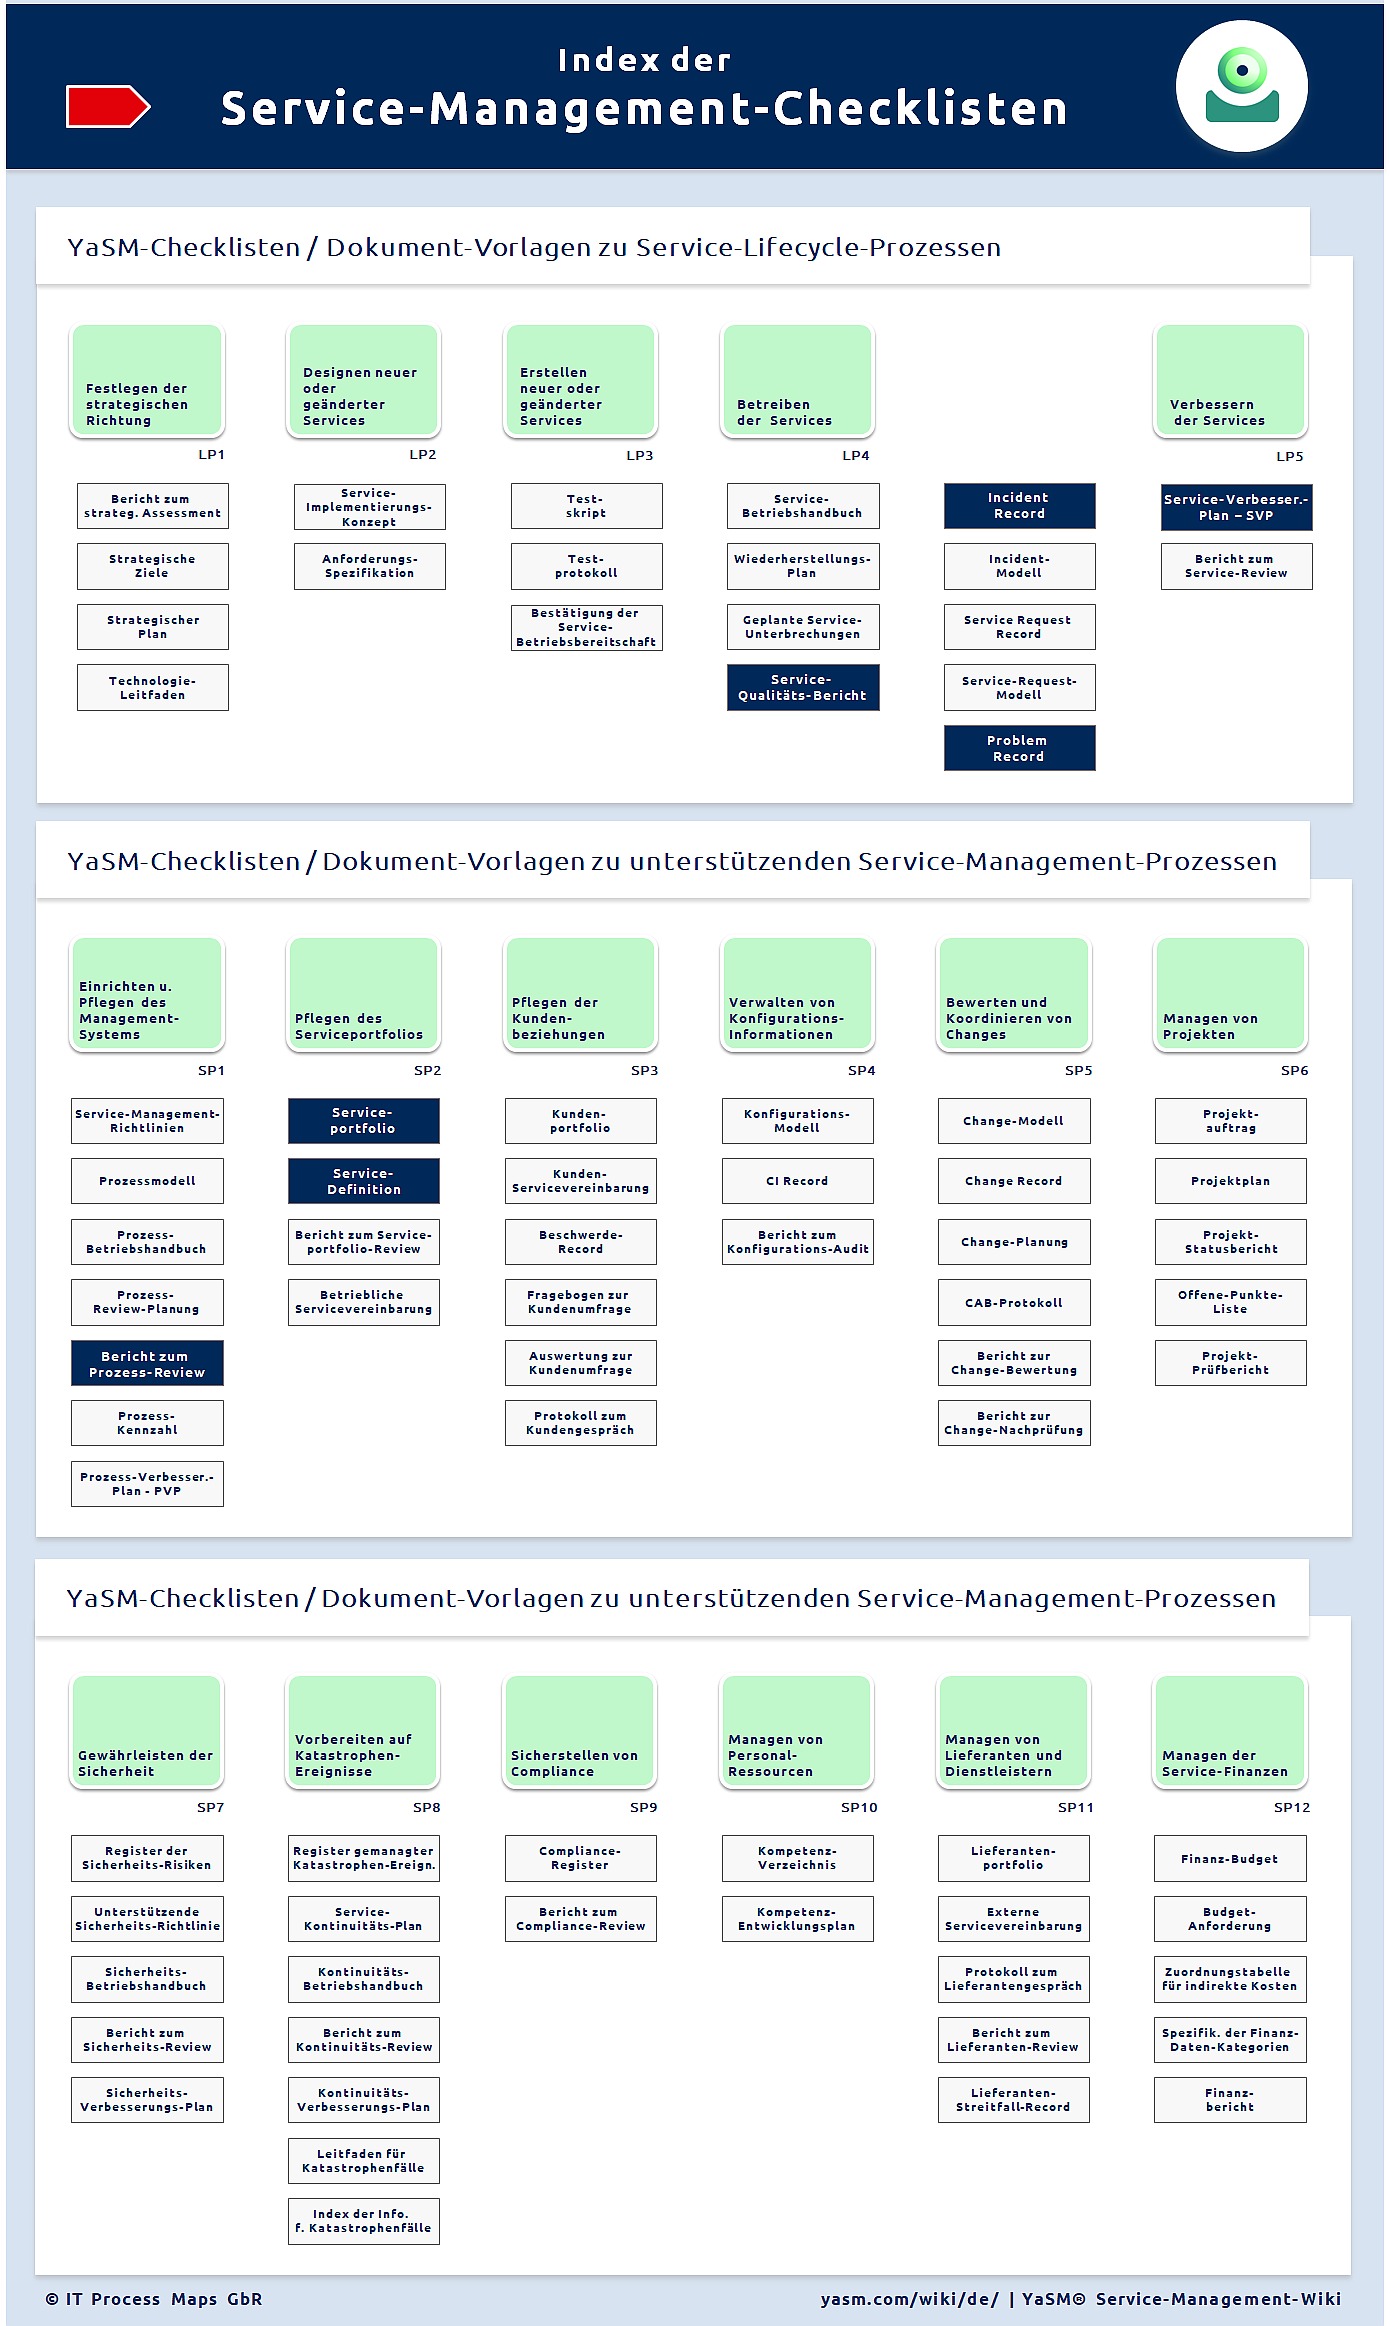 Index der Service-Management-Checklisten, Dokument-Vorlagen und Richtlinien im YaSM-Modell.